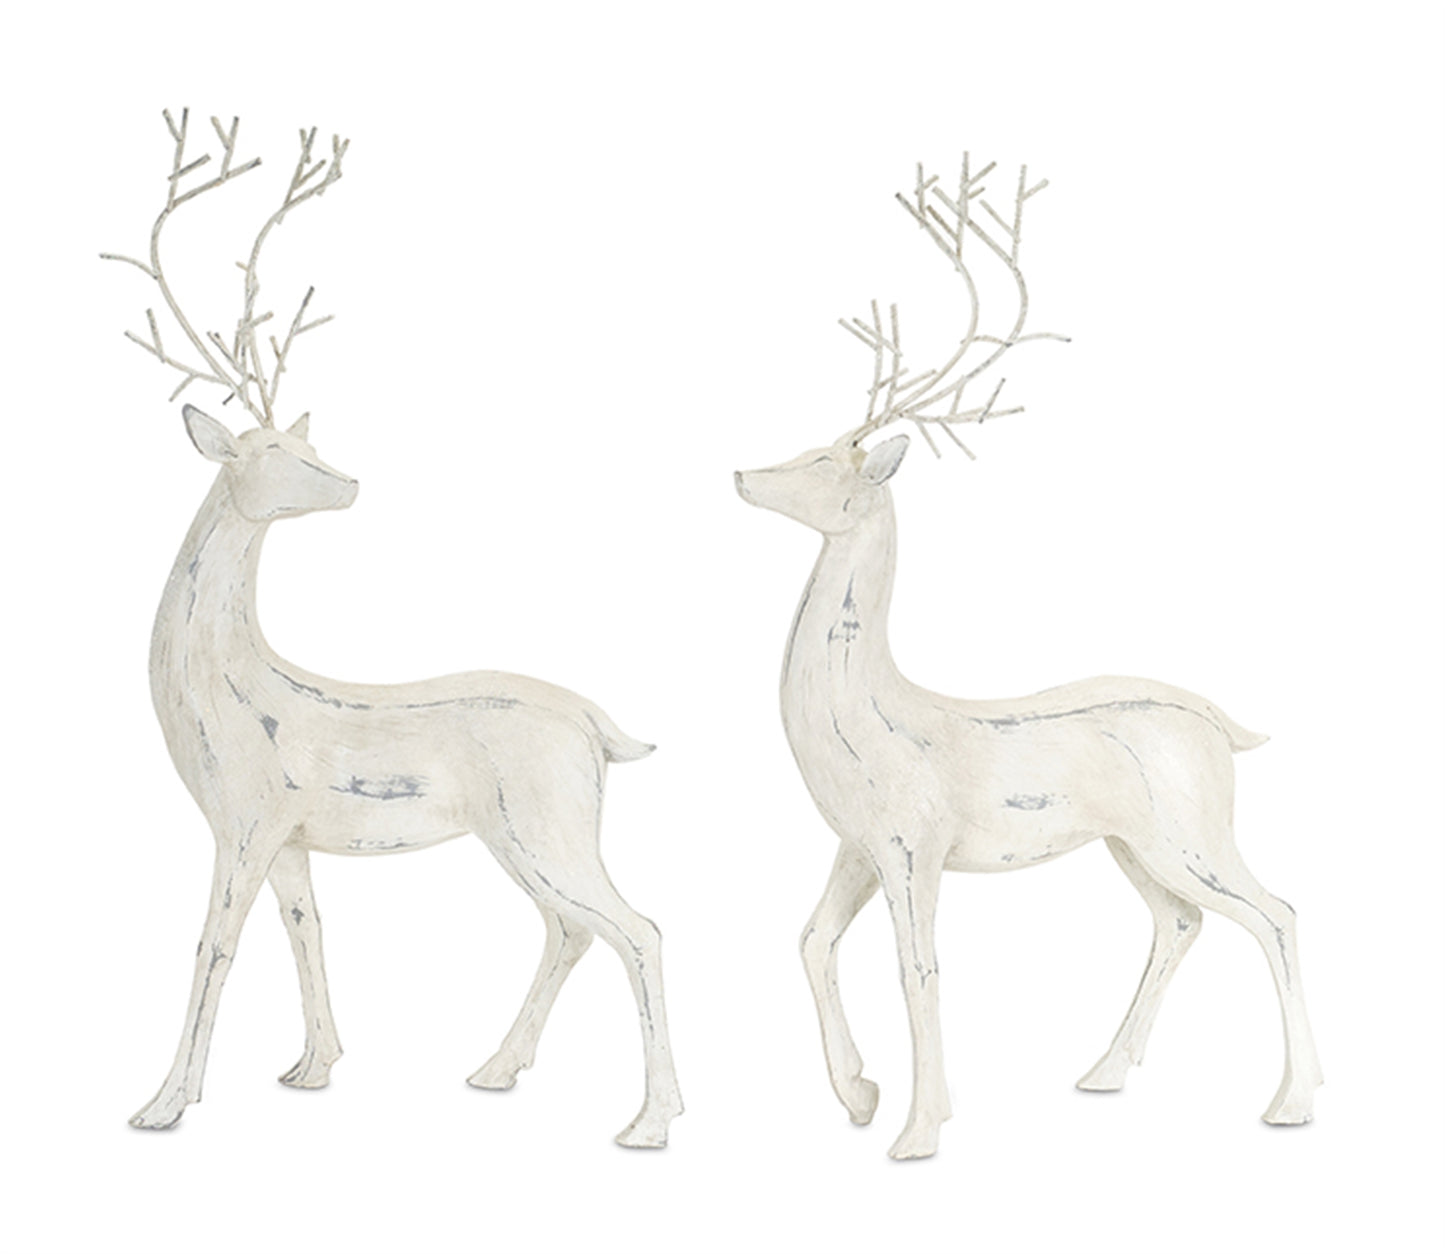 Distressed Ivory Deer Figurine with Metal Antlers (Set of 2)